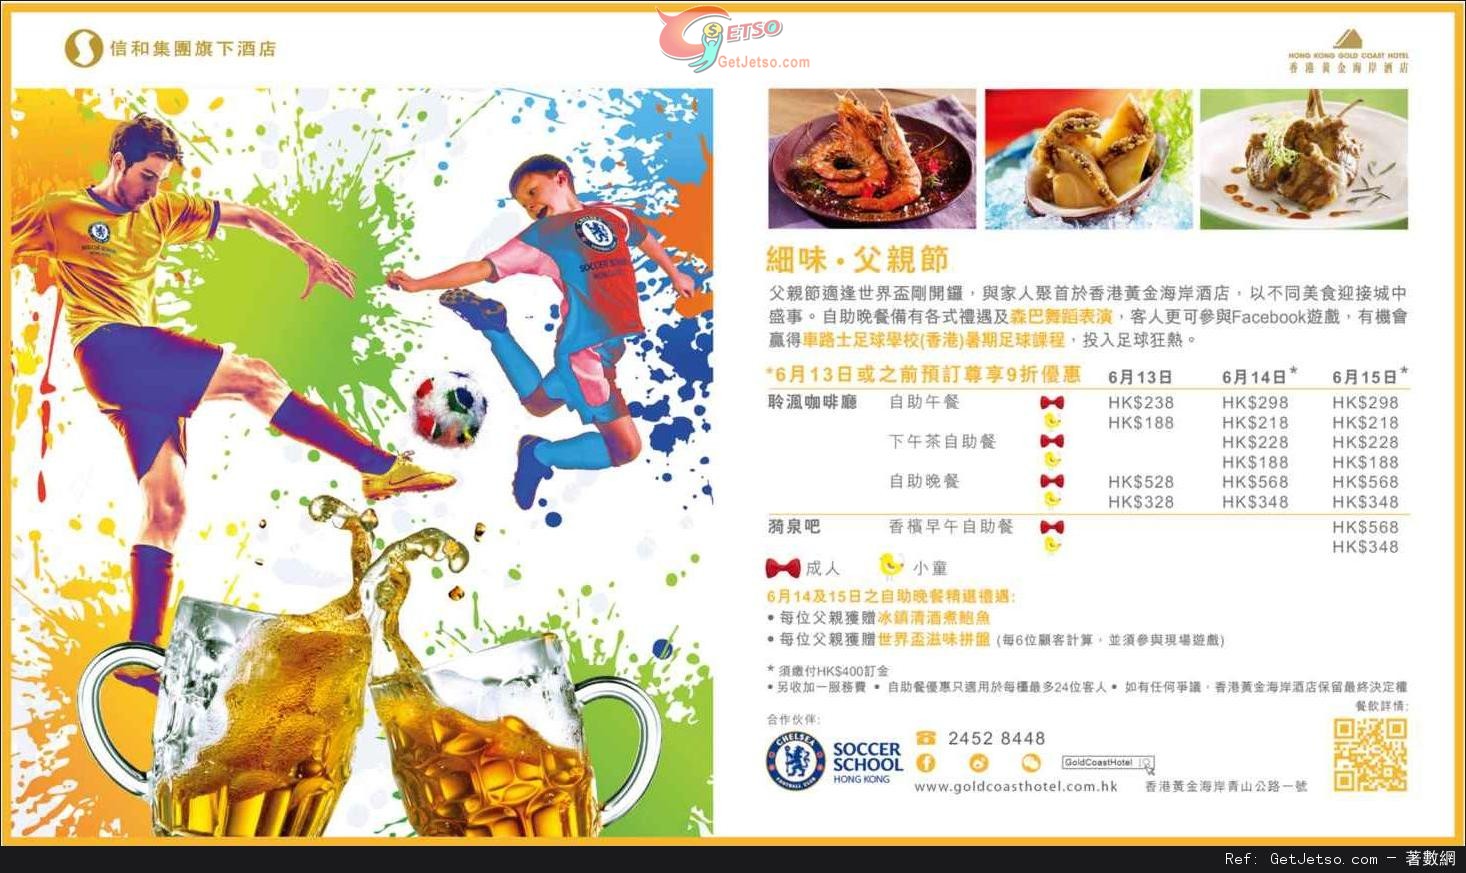 香港黃金海岸酒店父親節自助餐預訂優惠(至14年6月13日)圖片1